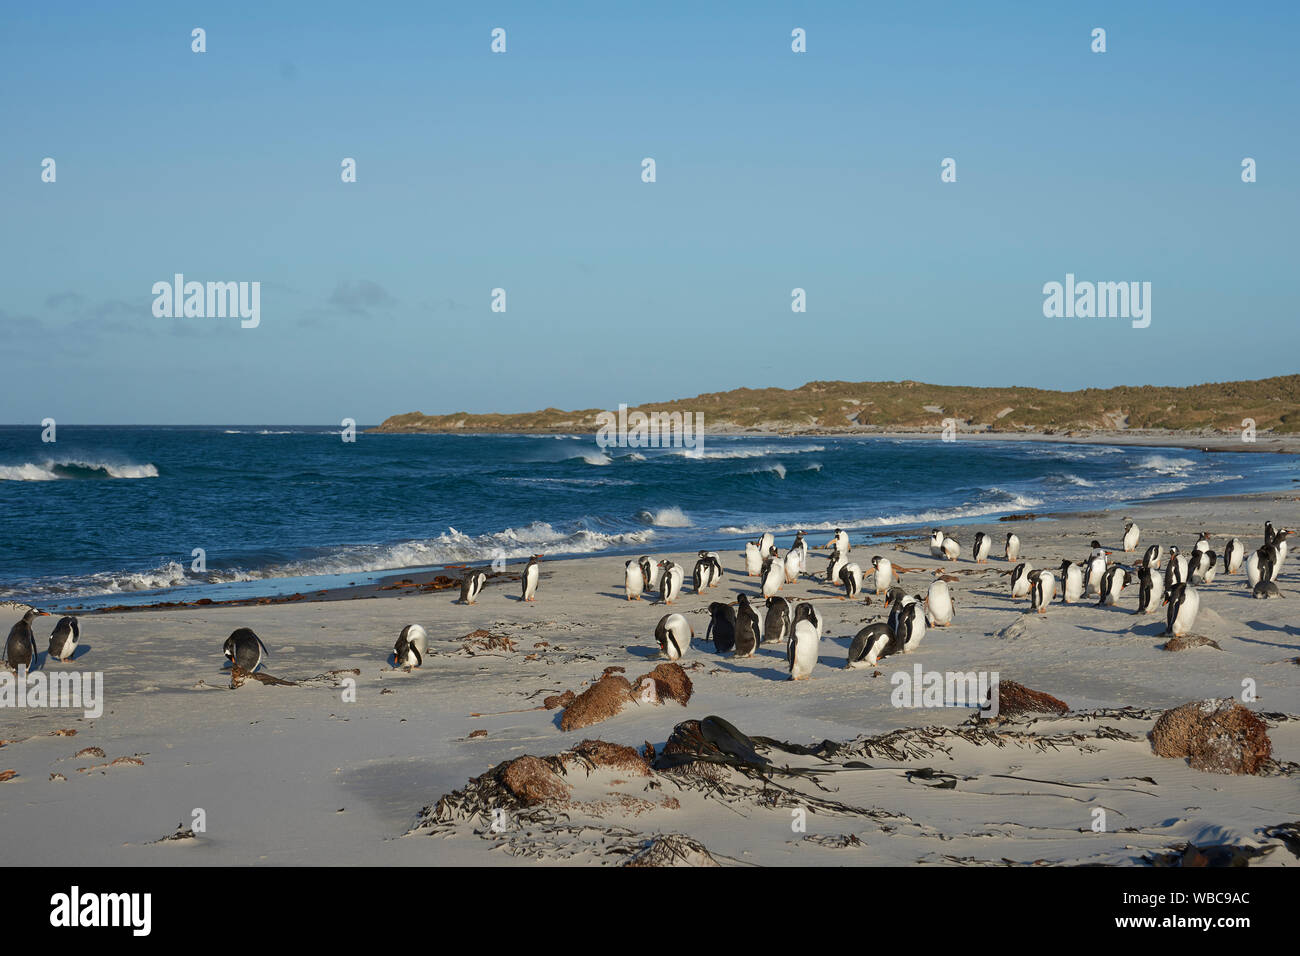 Manchots Papous (Pygoscelis papua) sur une plage de sable sur l'île de Sea Lion dans les îles Falkland. Banque D'Images